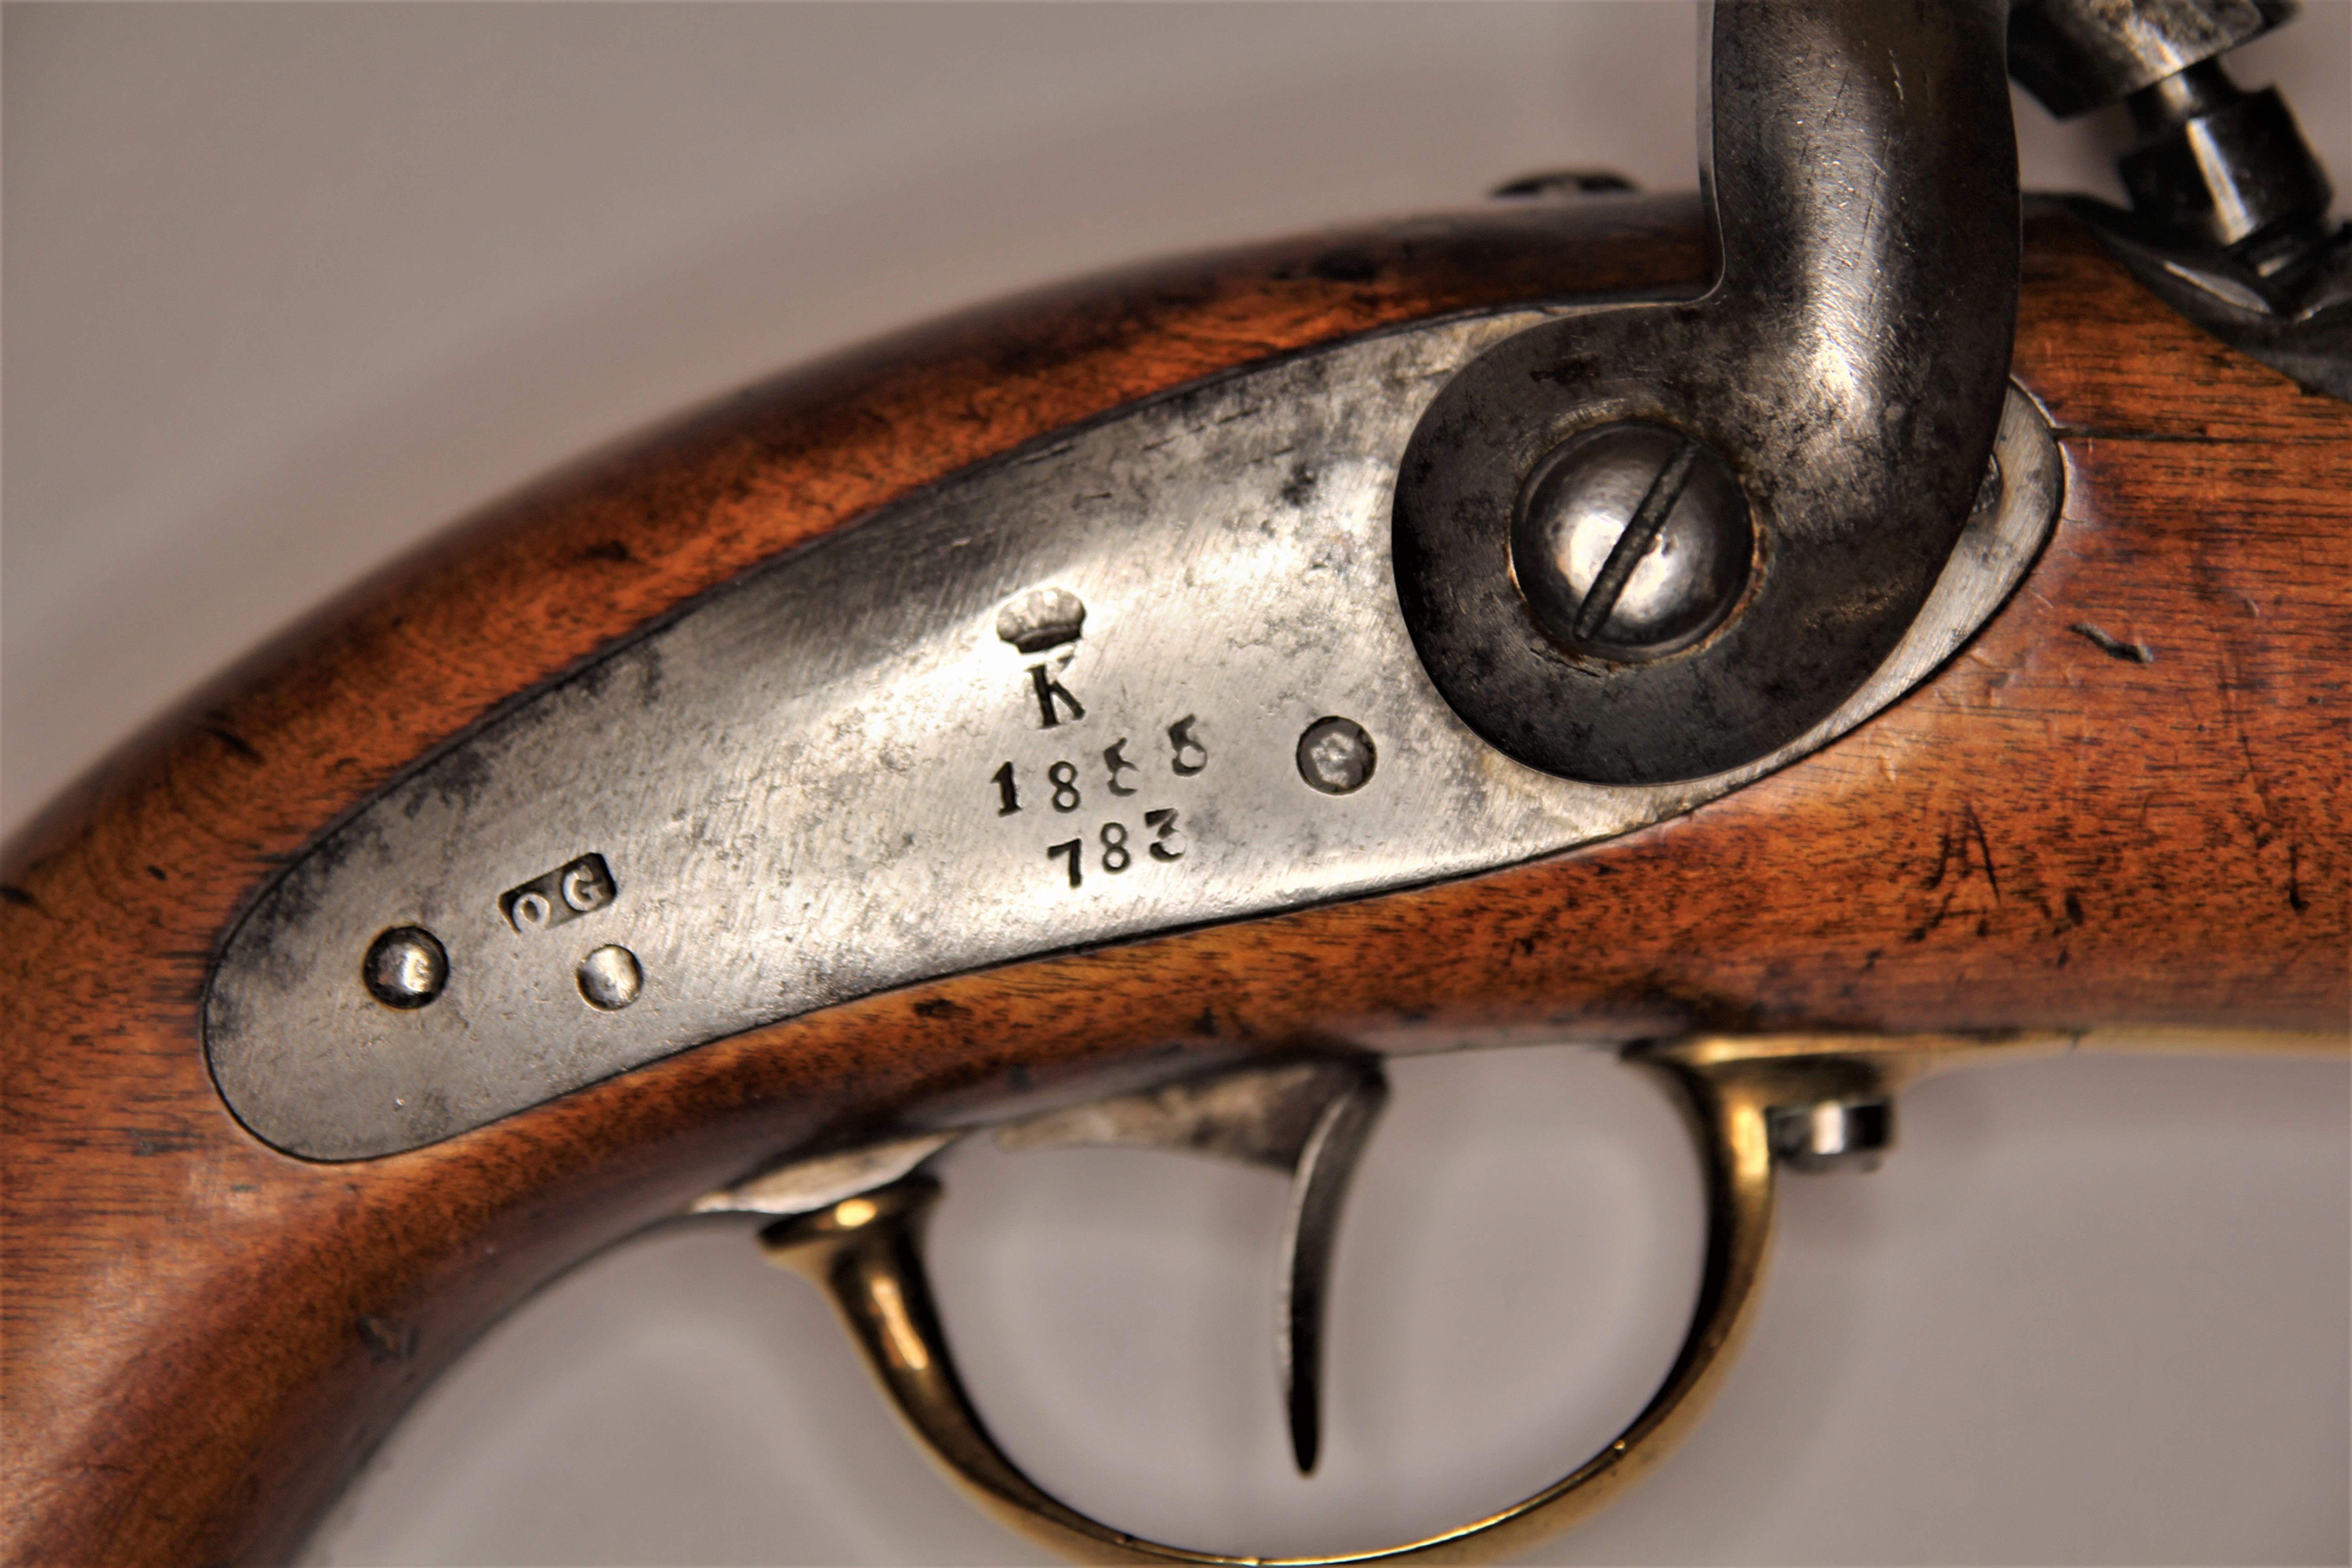 ./guns/pistol/bilder/Pistol-Kongsberg-M1848-1855-783-3.jpg